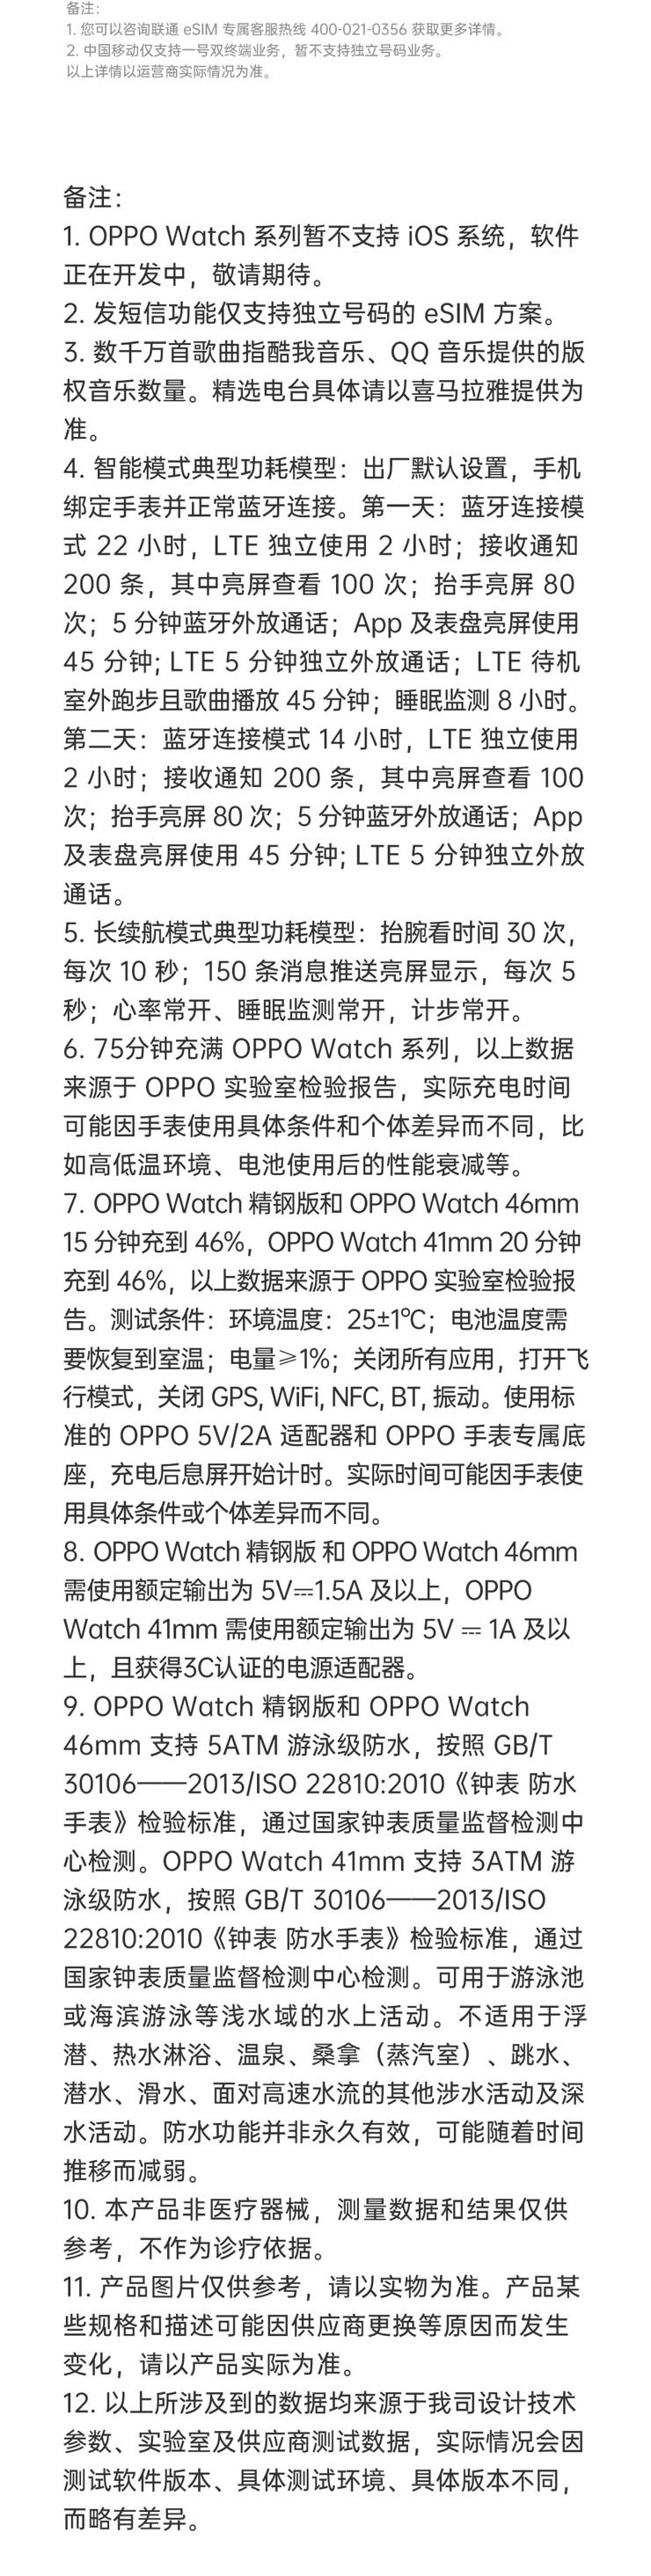 OPPO Watch 46mm 智能手表蓝牙男女运动手环